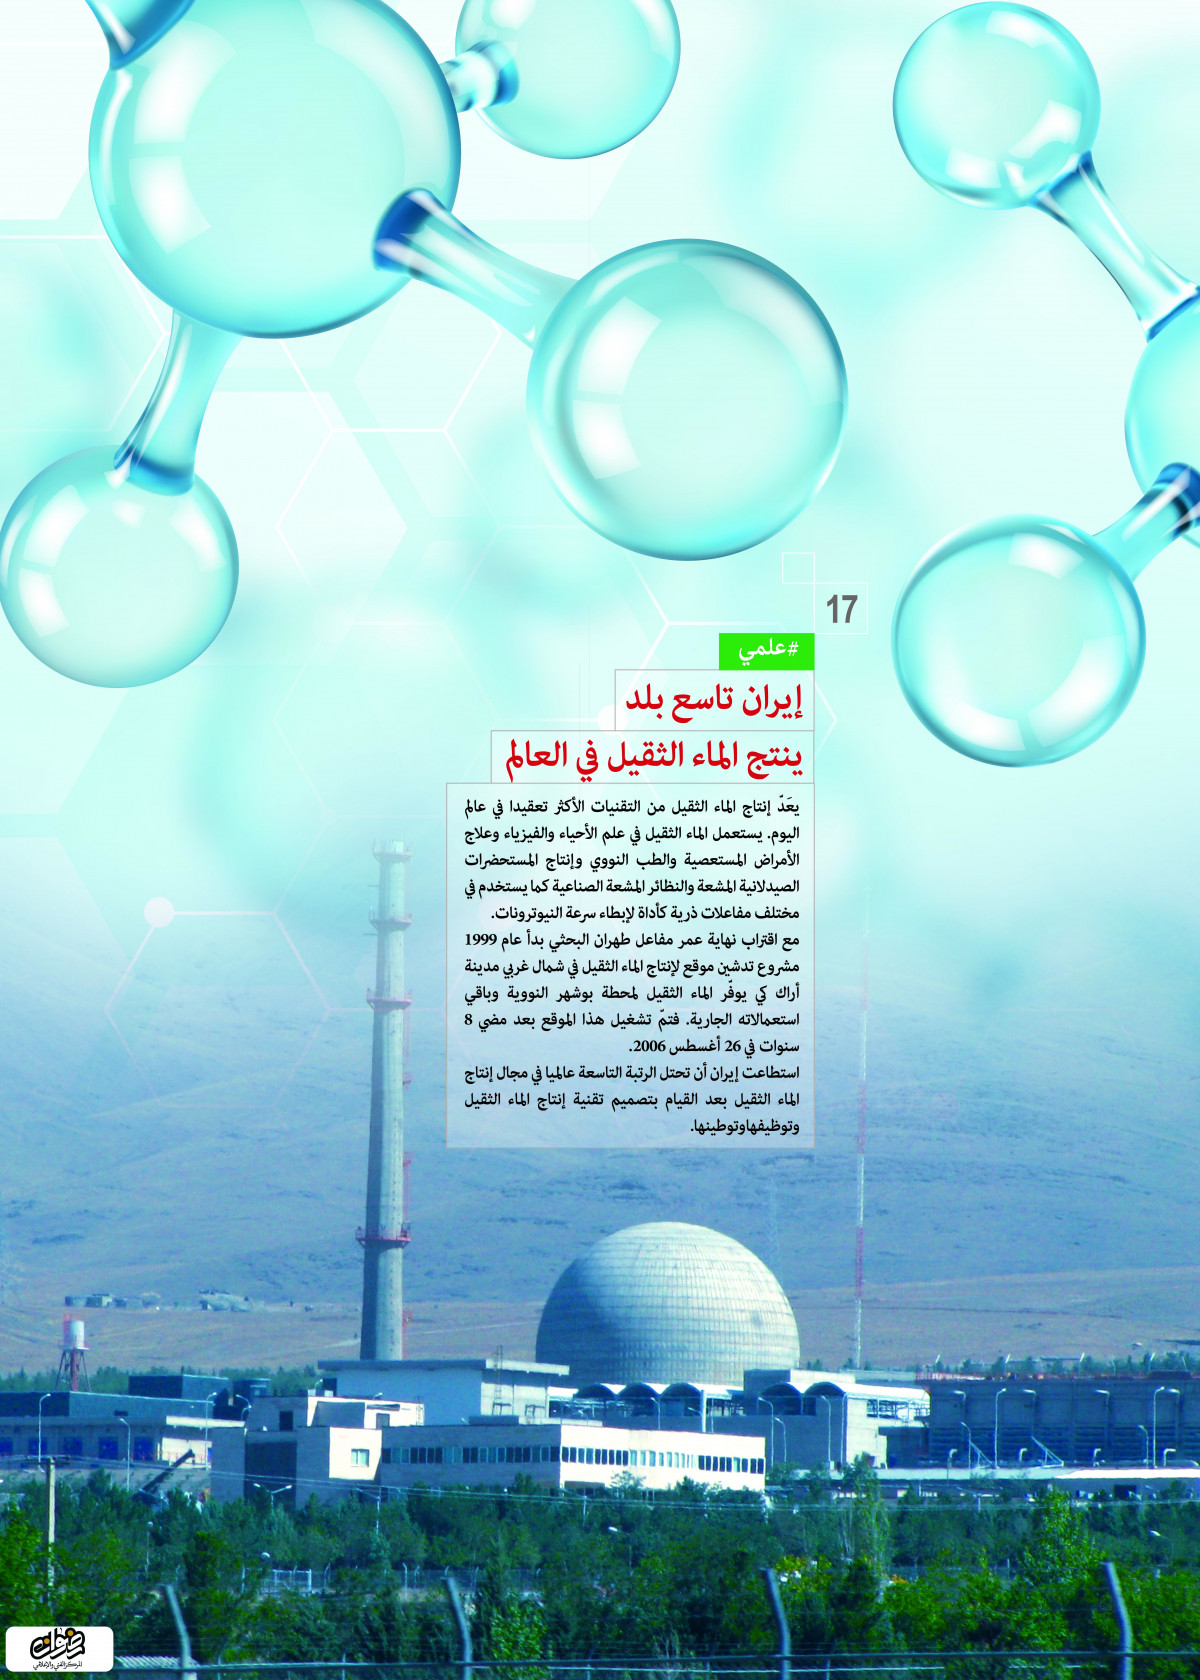 إنجازات العلمية / إيران تاسع بلد ينتج الماء الثقيل في العالم